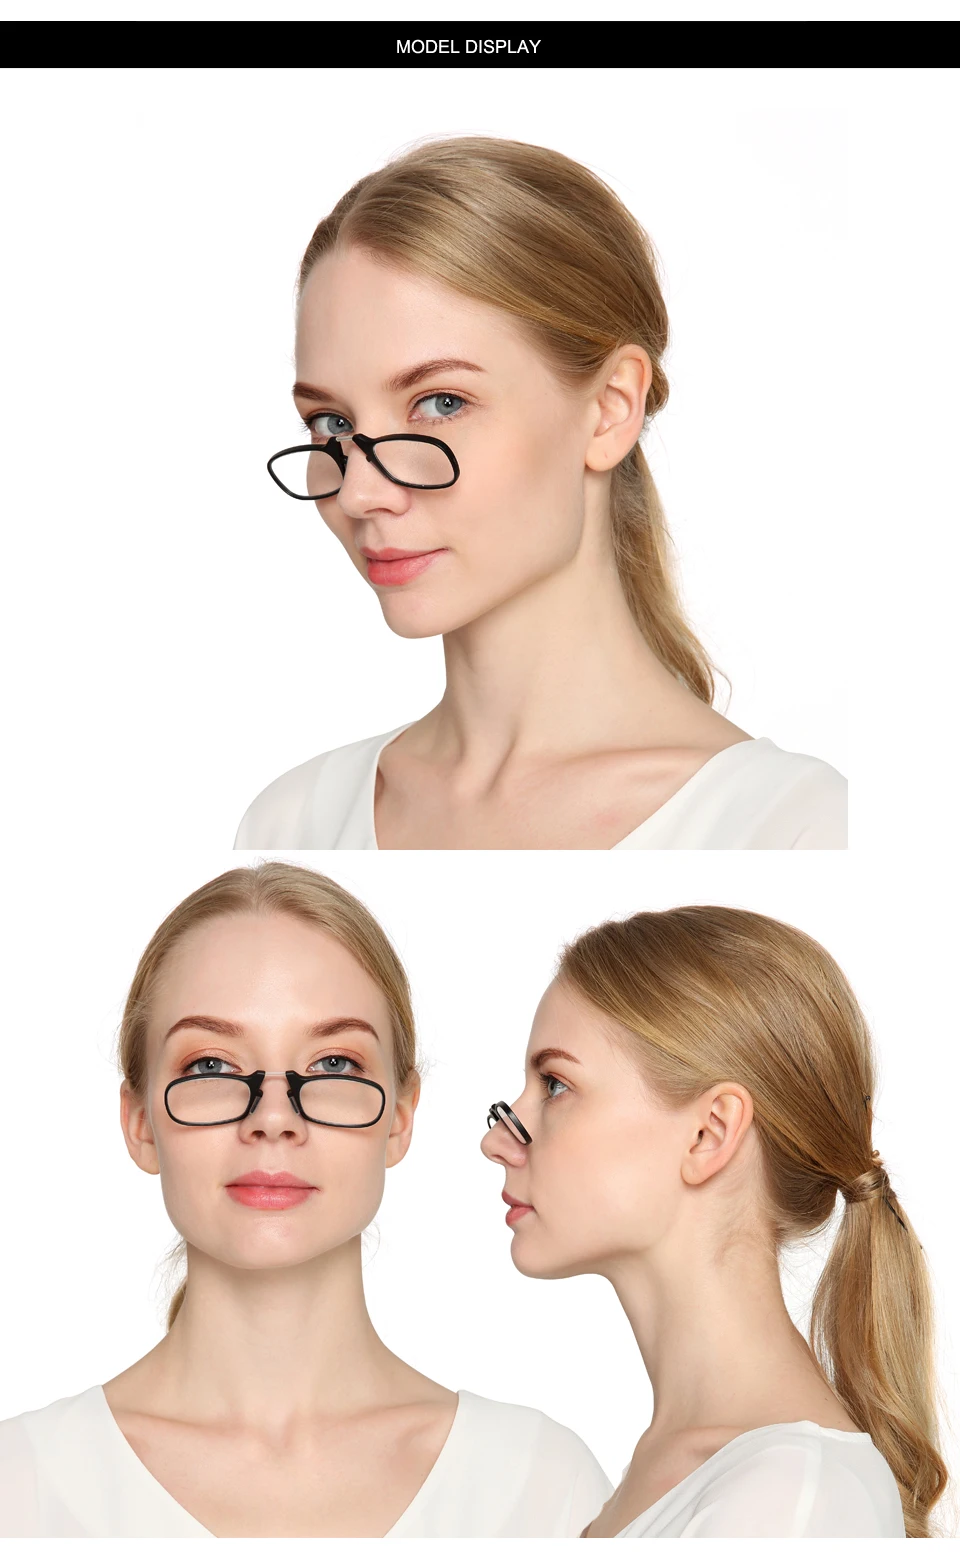 TR90 зажим носовые защитные очки для чтения, очки для чтения, мини-складной Круглый оправы для очков плоское пенсне + 1,0 до + 3,0 Портативный с